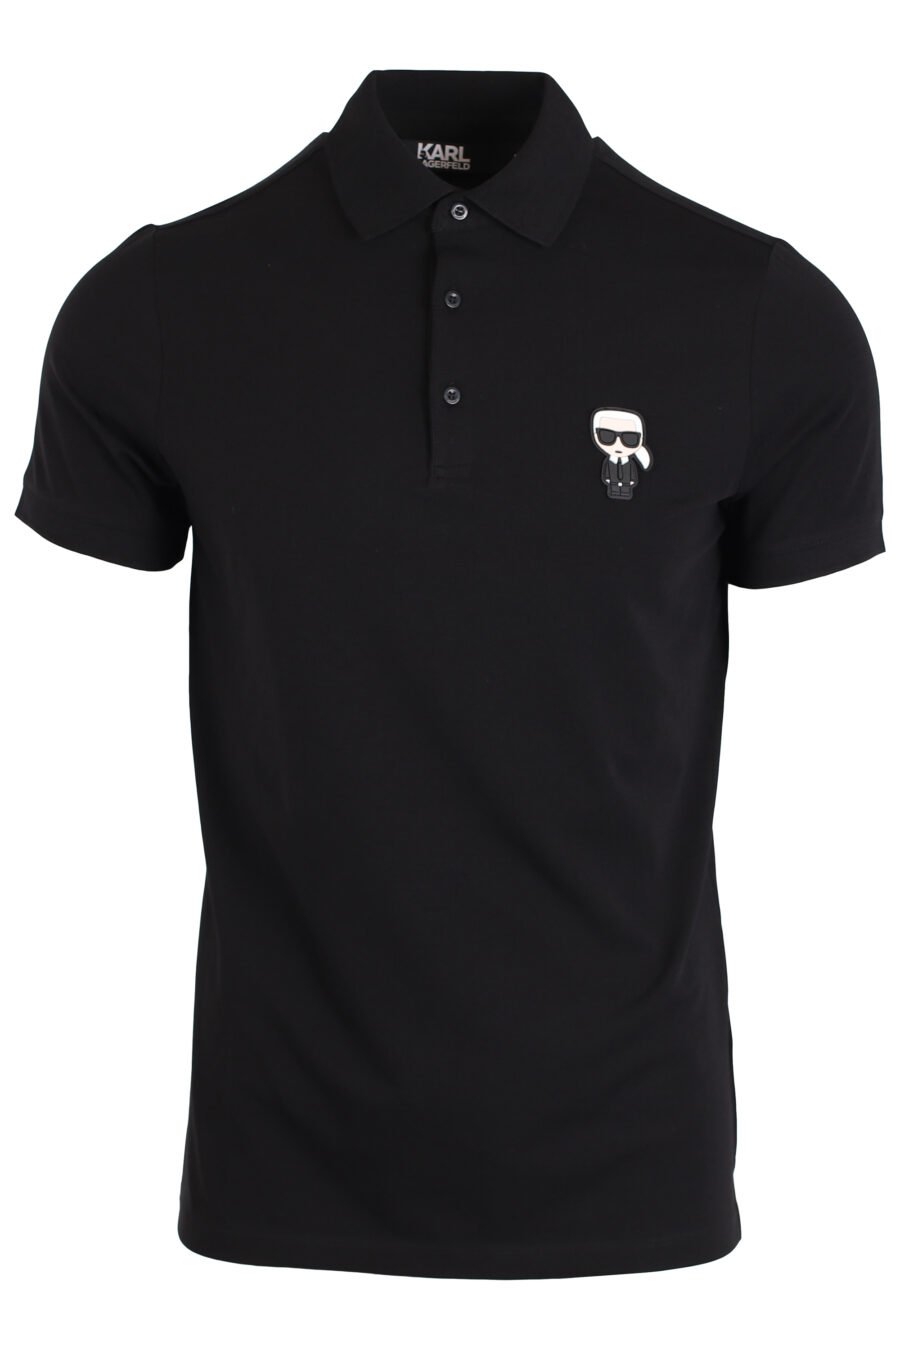 Black polo shirt with small "ikonik" logo - IMG 3985